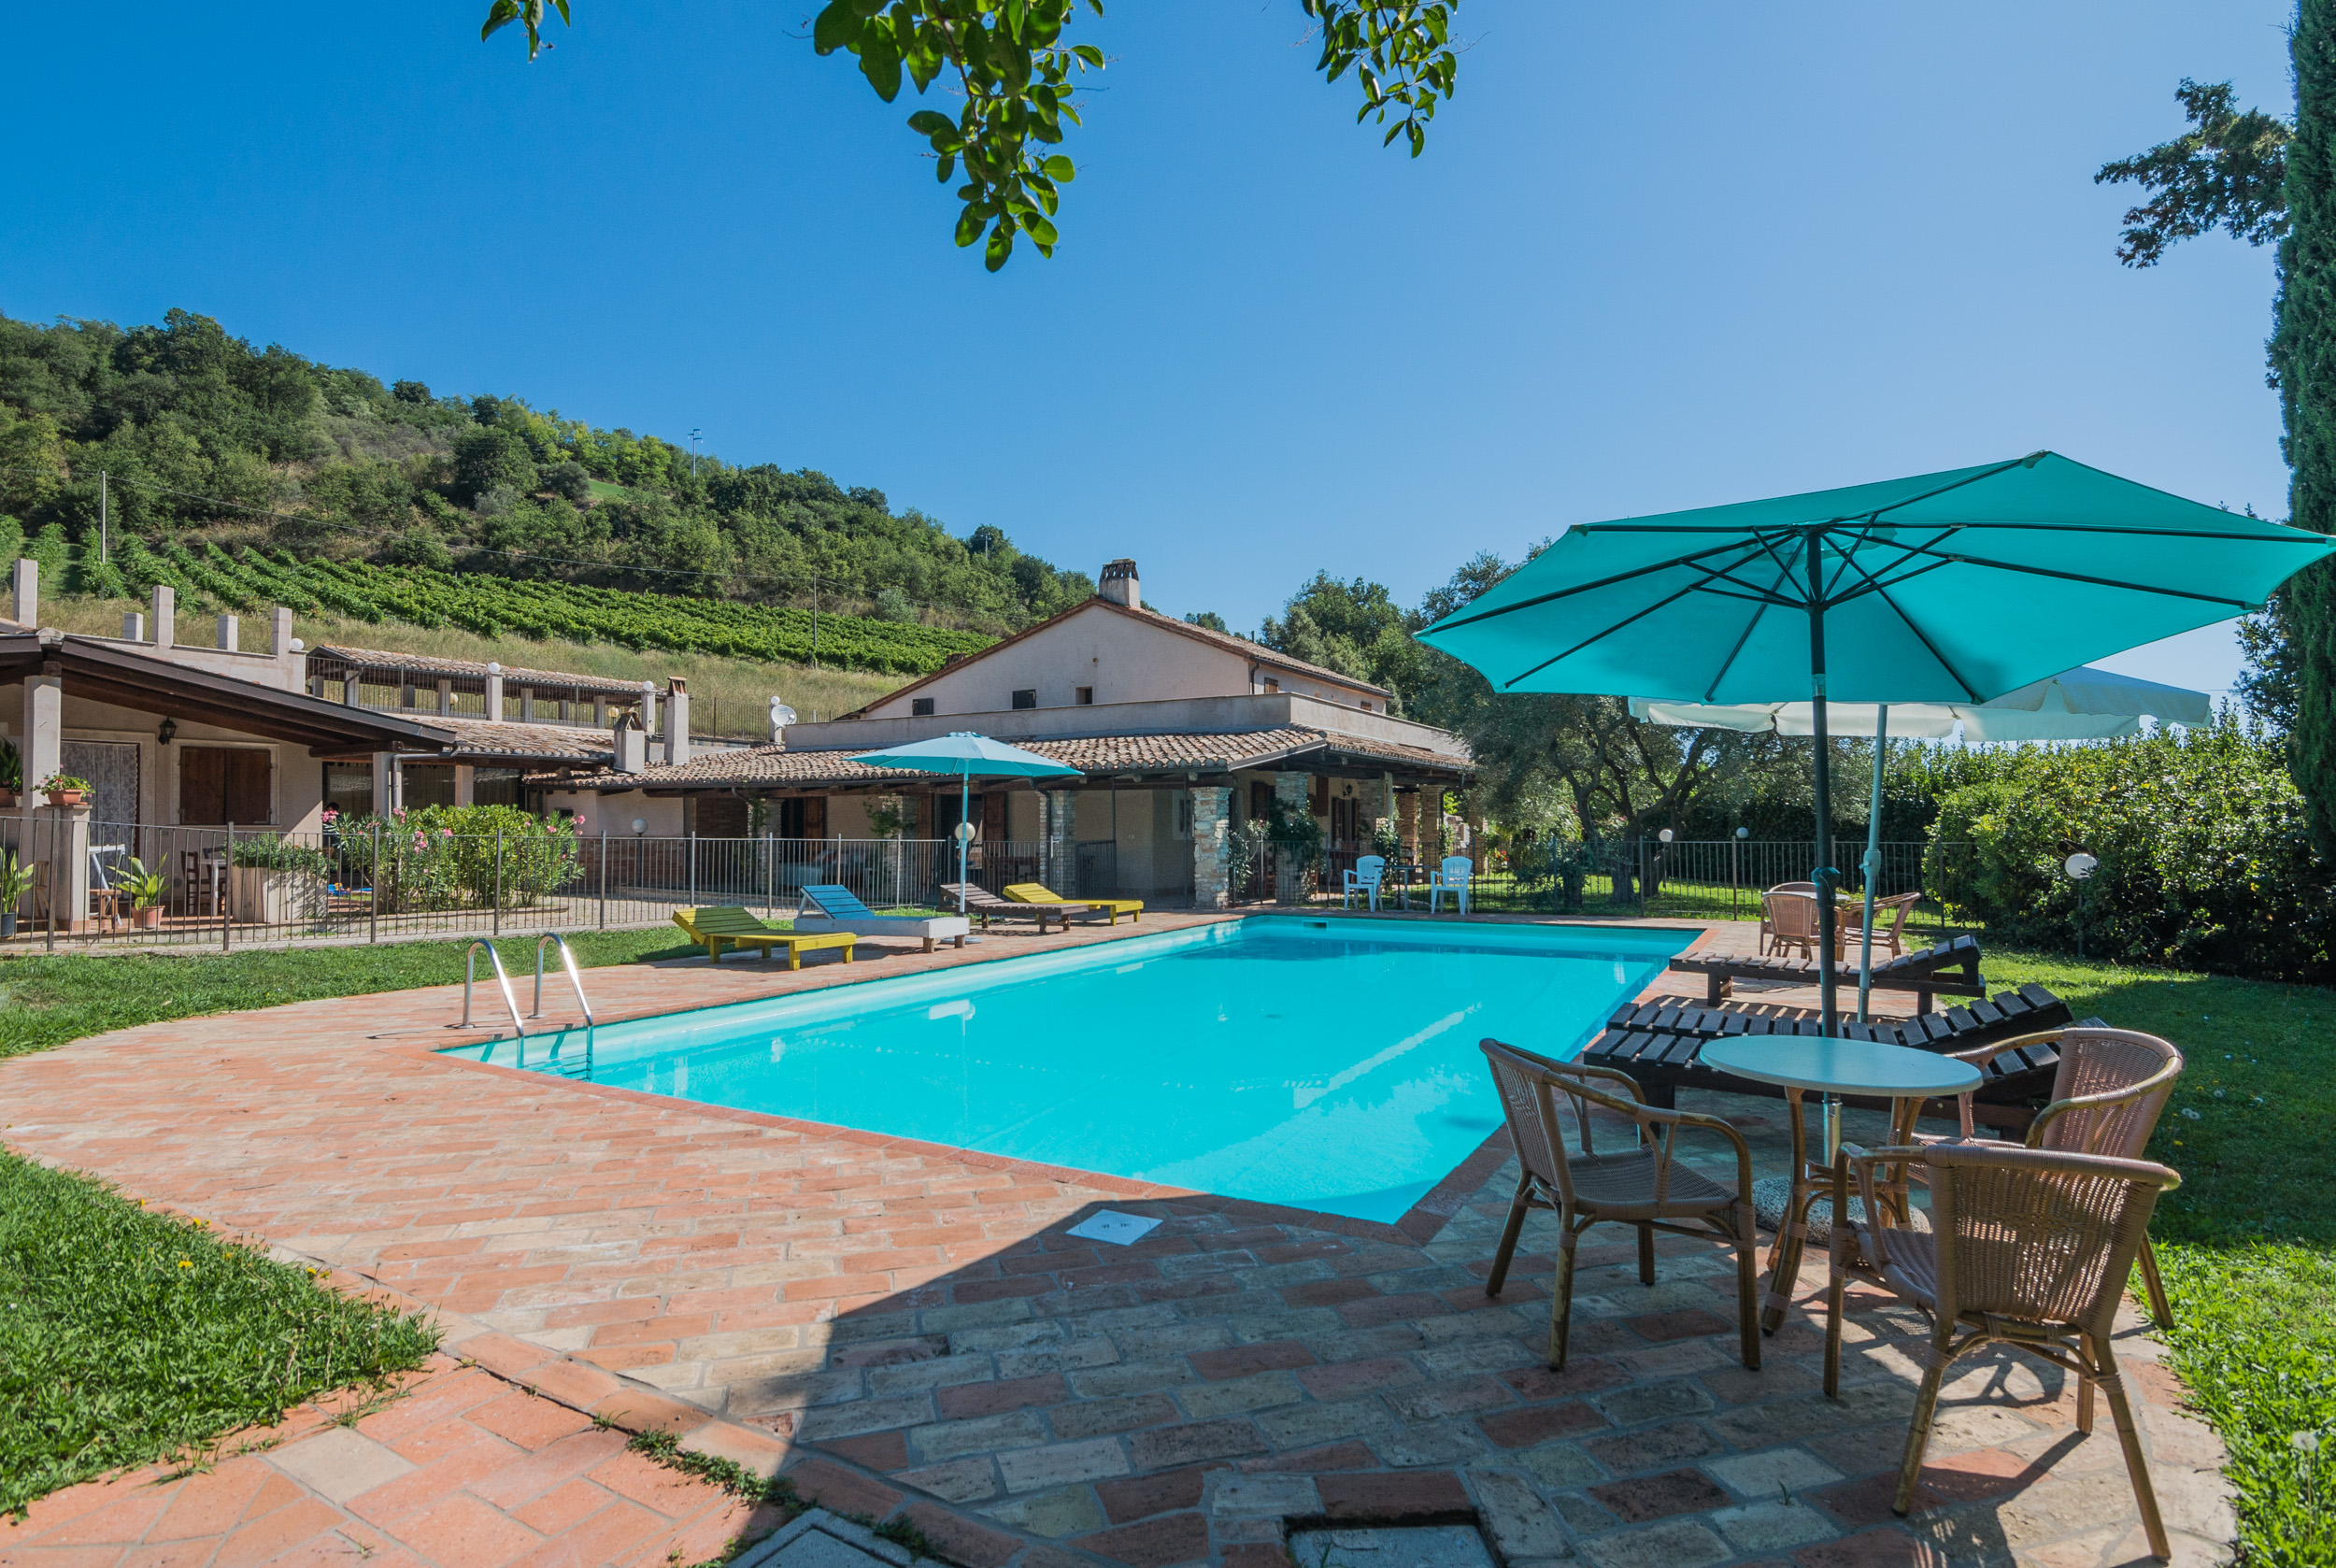 L'Agenzia Immobiliare Puzielli propone Esclusiva proprietà con piscina in vendita nelle Marche